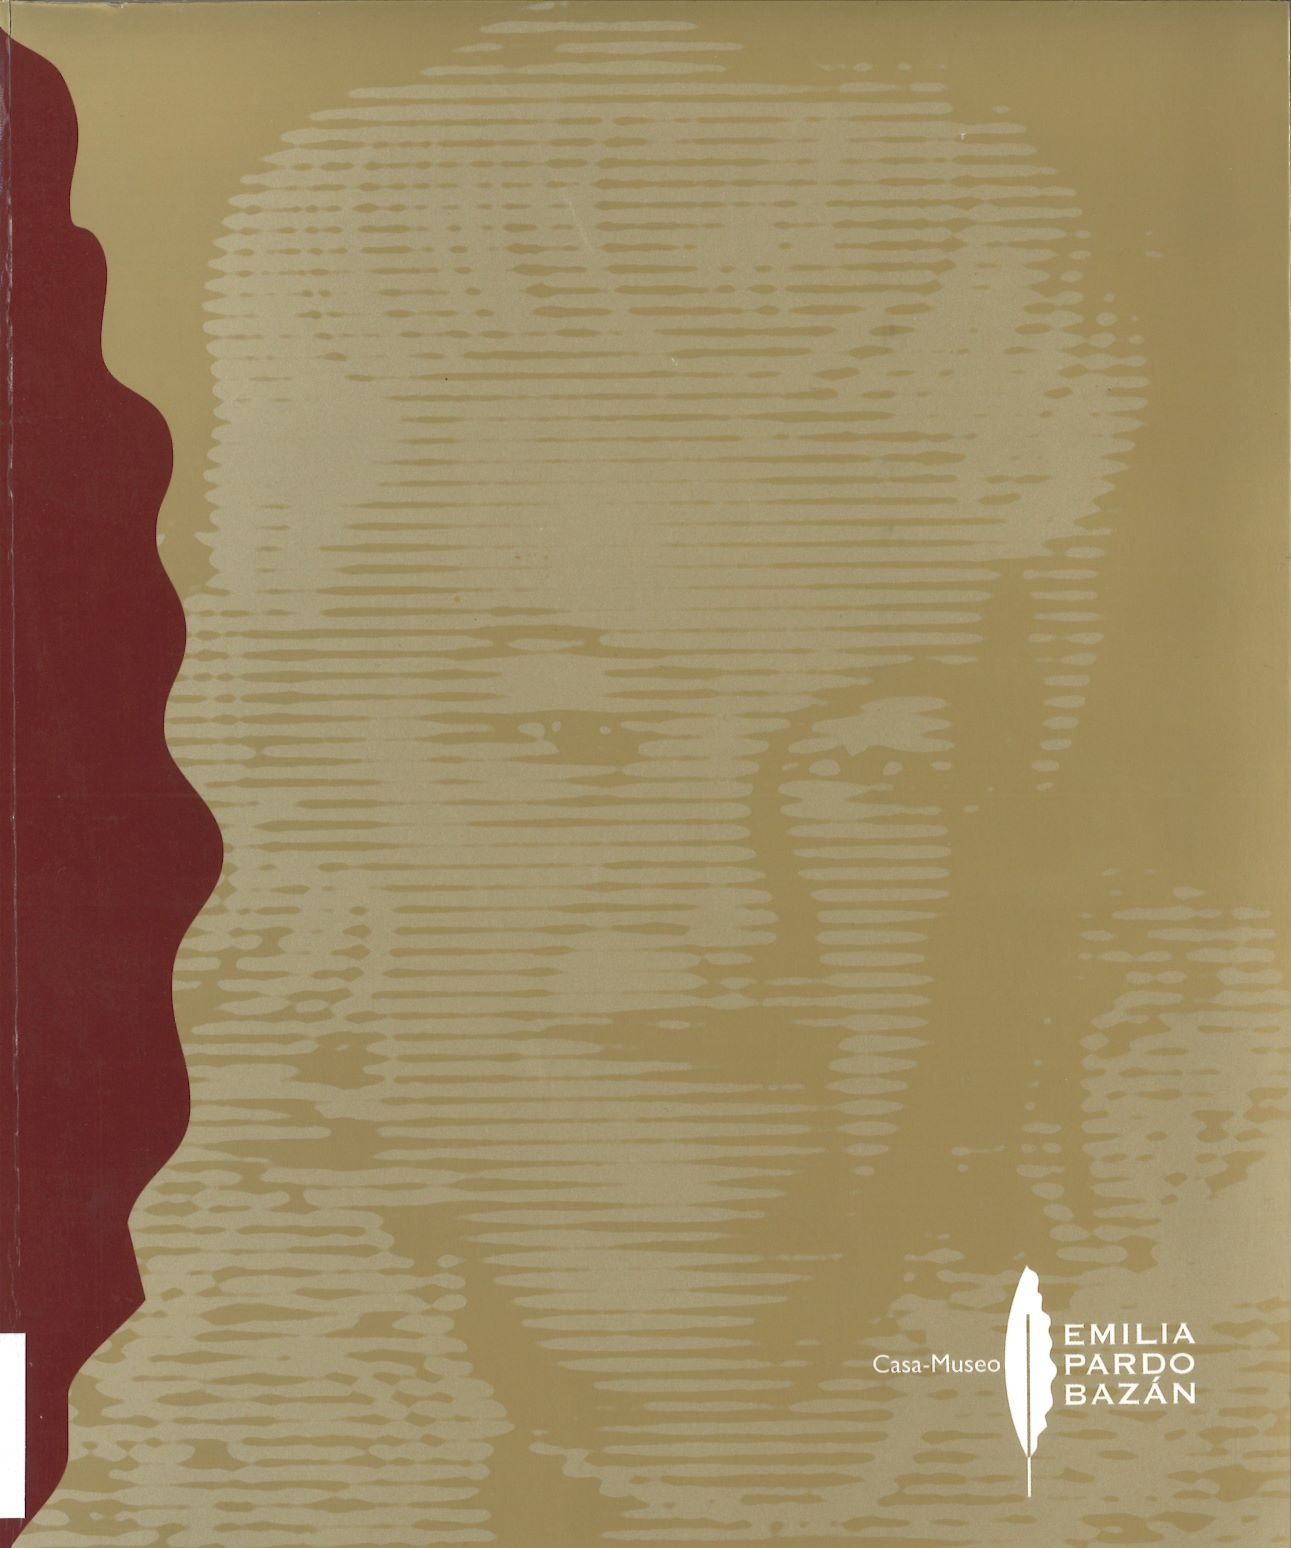 Imagen de portada del libro Casa-Museo Emilia Pardo Bazán